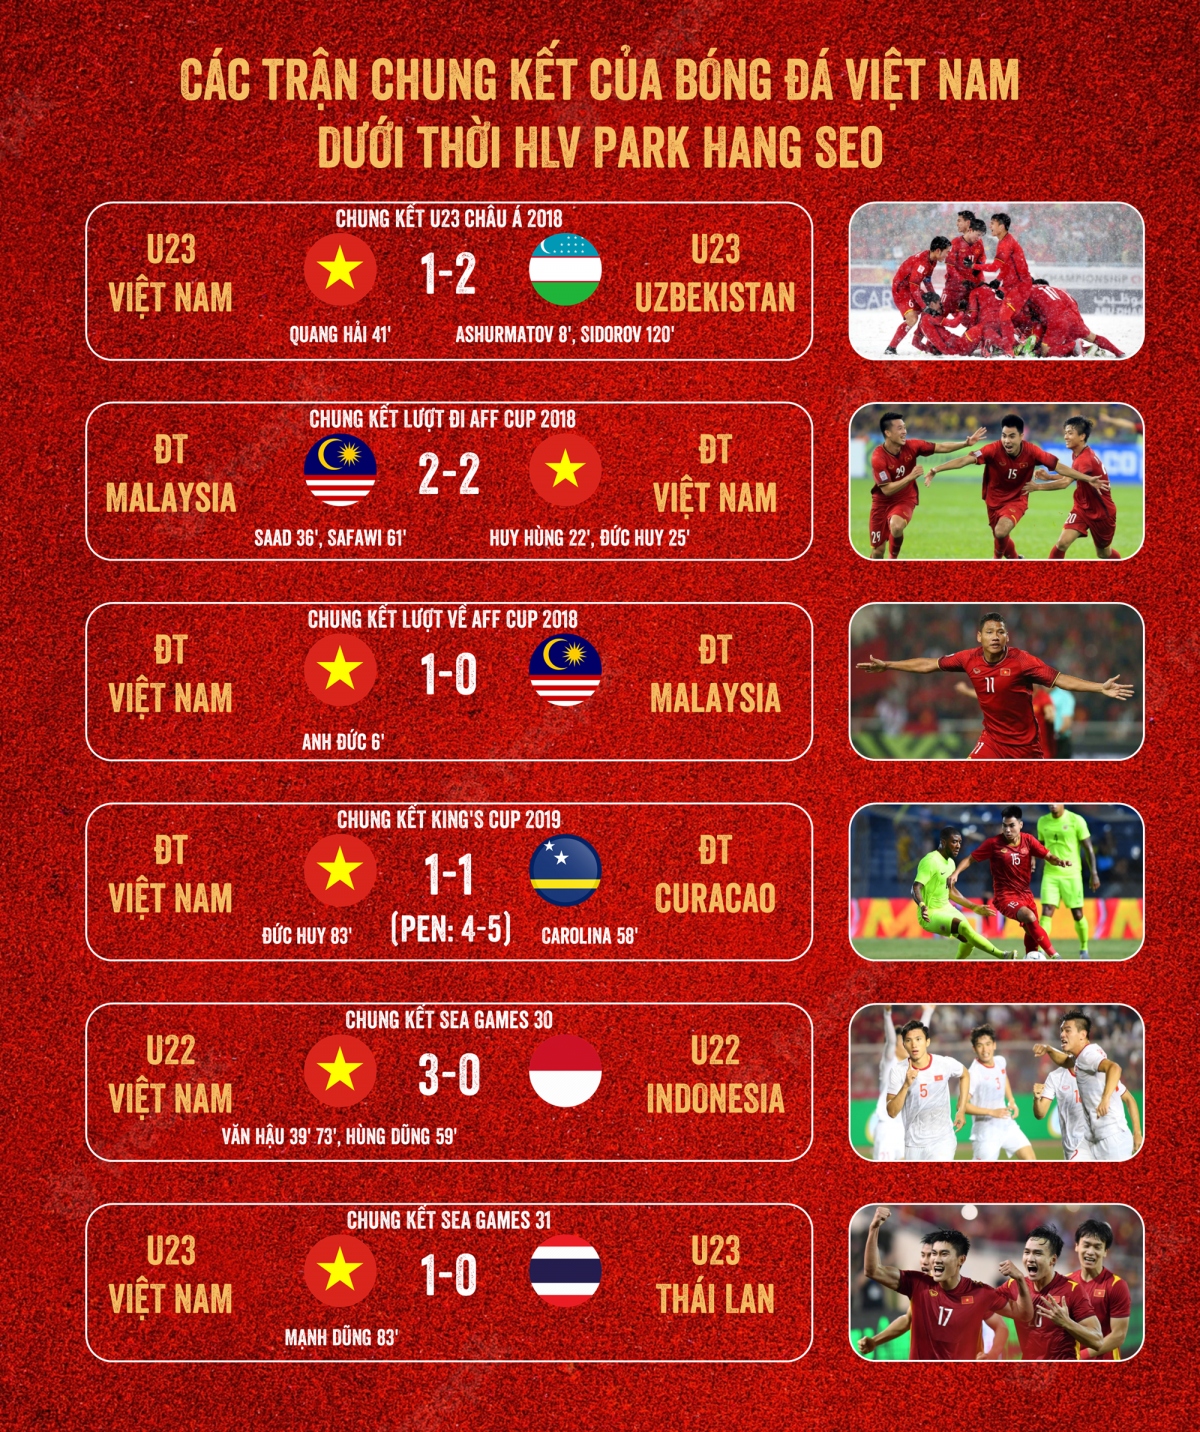 Bóng đá Việt Nam dưới thời HLV Park Hang-seo: Cứ đá chung kết là ghi bàn - Ảnh 1.